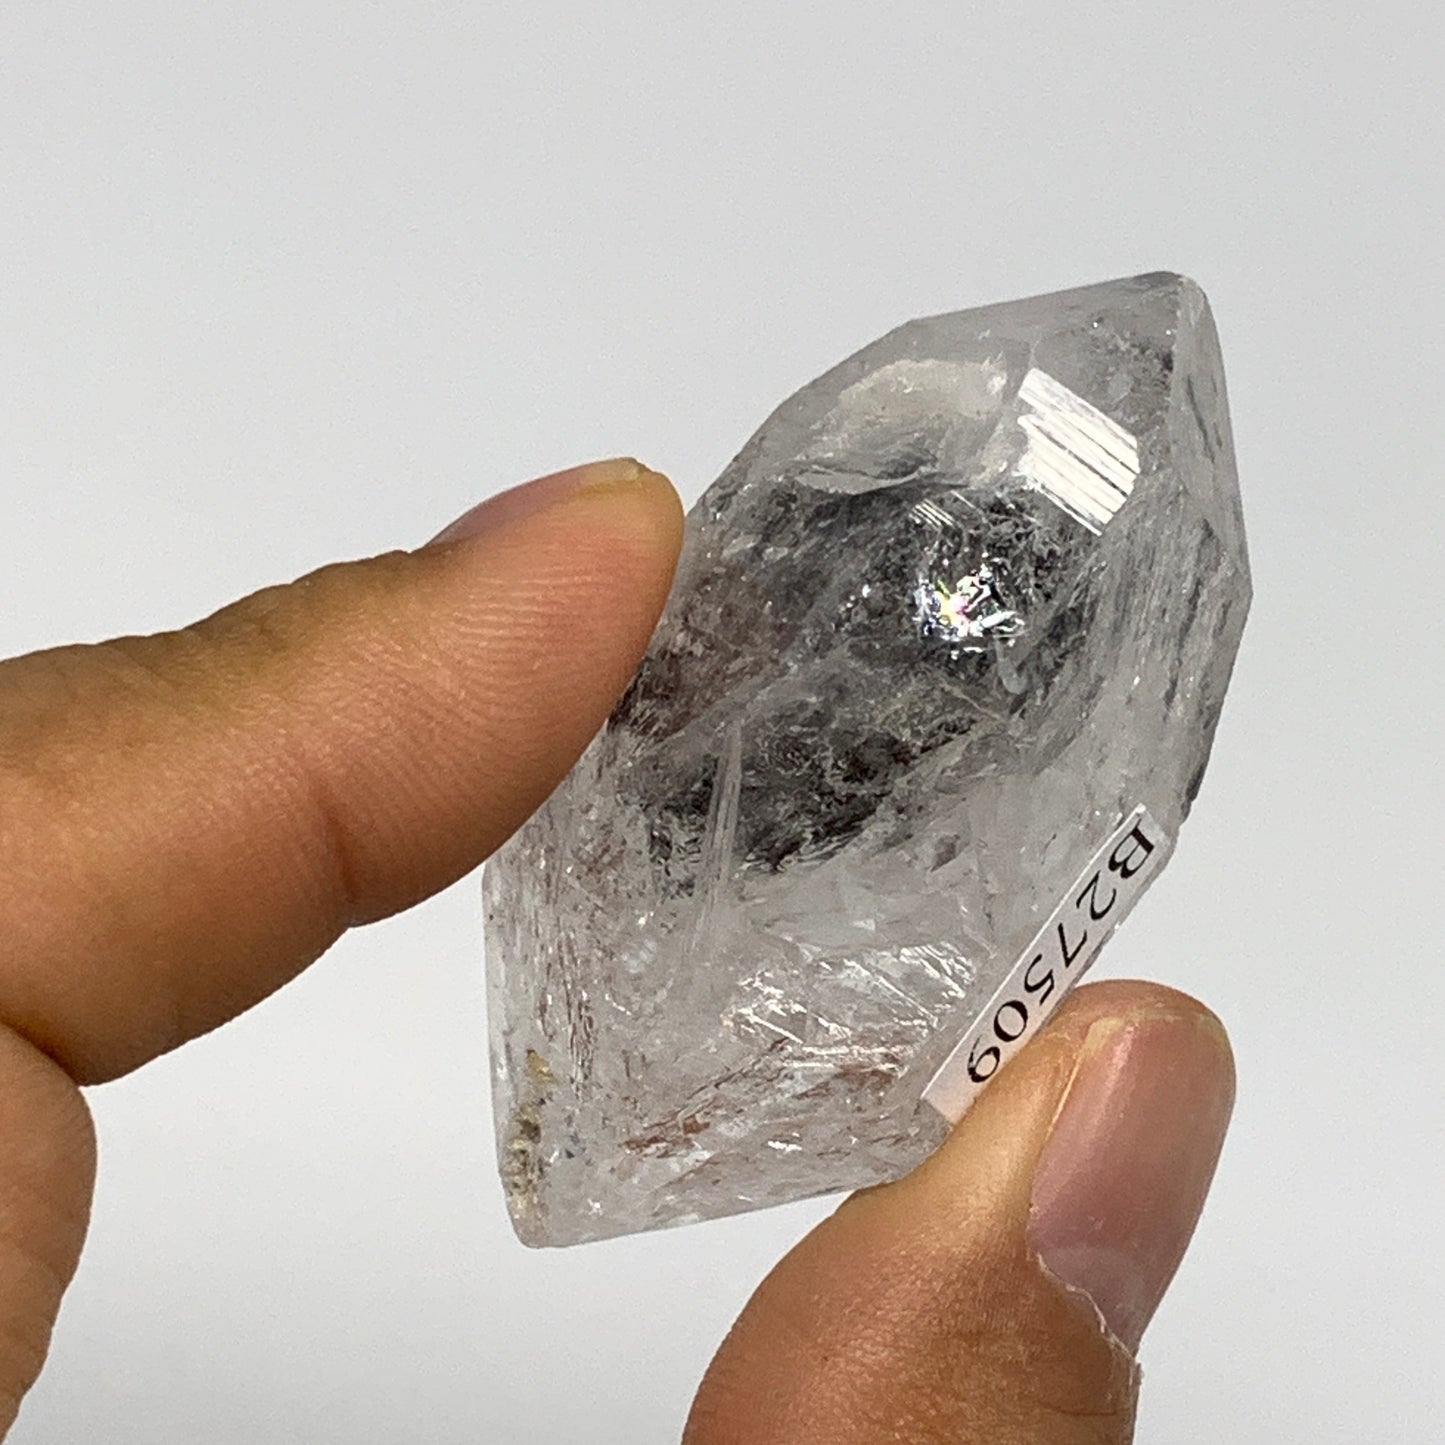 33.5g, 2"x1.2"x0.8", Natural Window Quartz Crystal Terminated @Pakistan,B27515